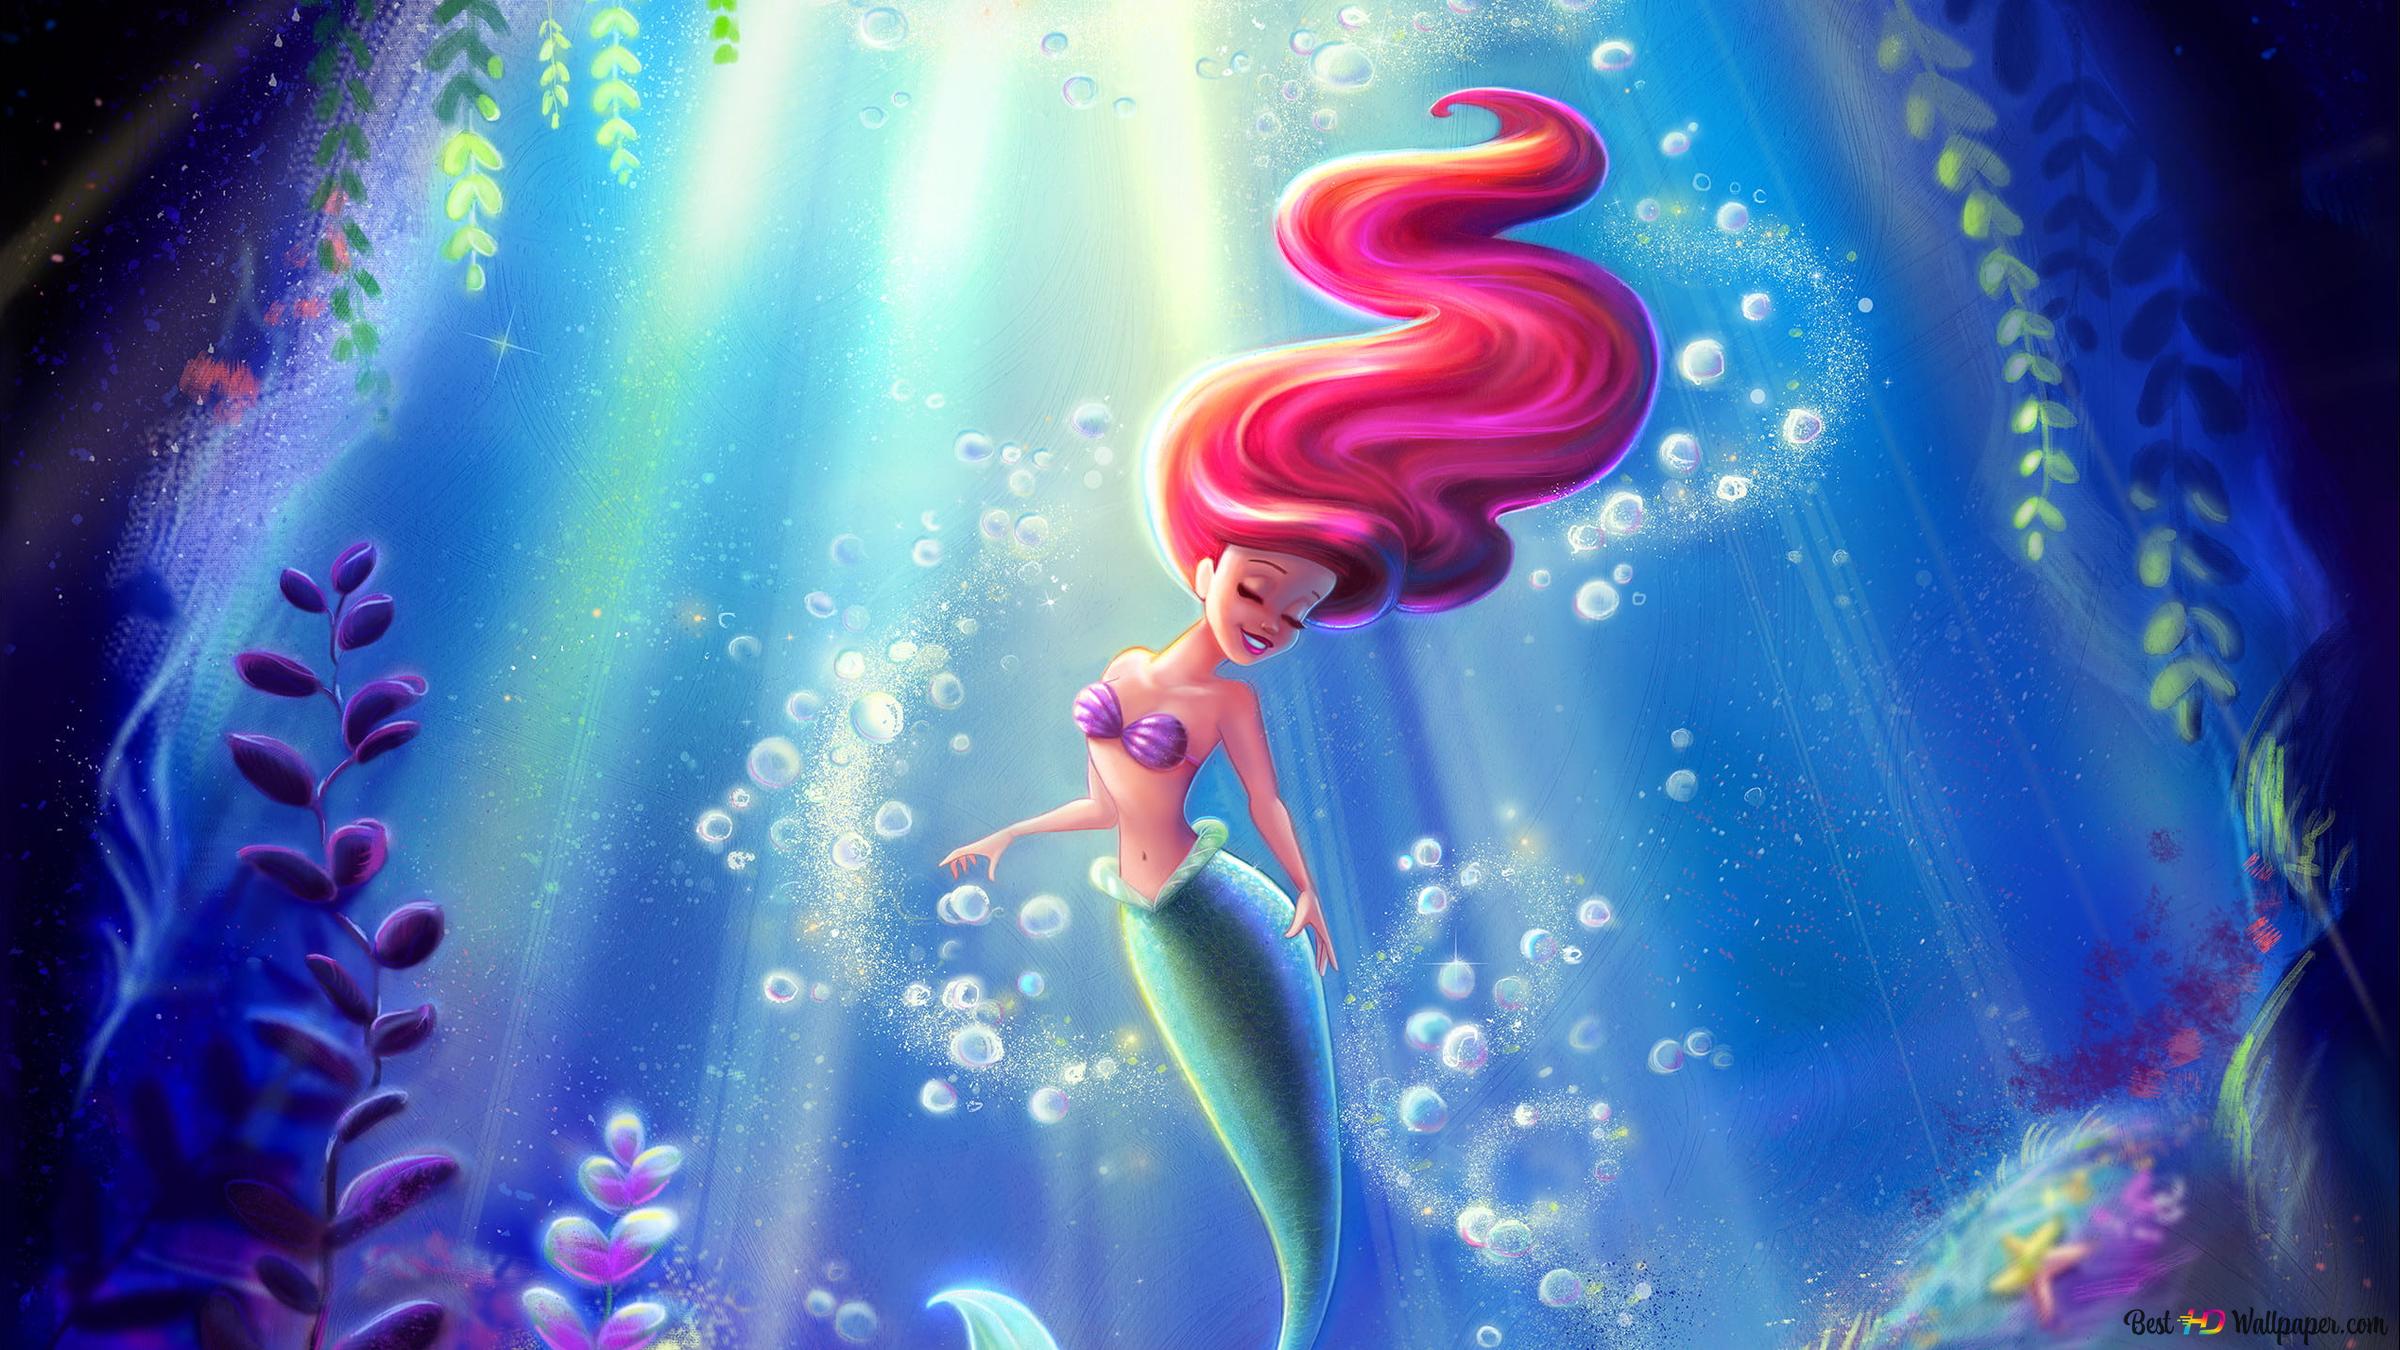 The Little Mermaid animated movie mermaid in water 2K wallpaper download